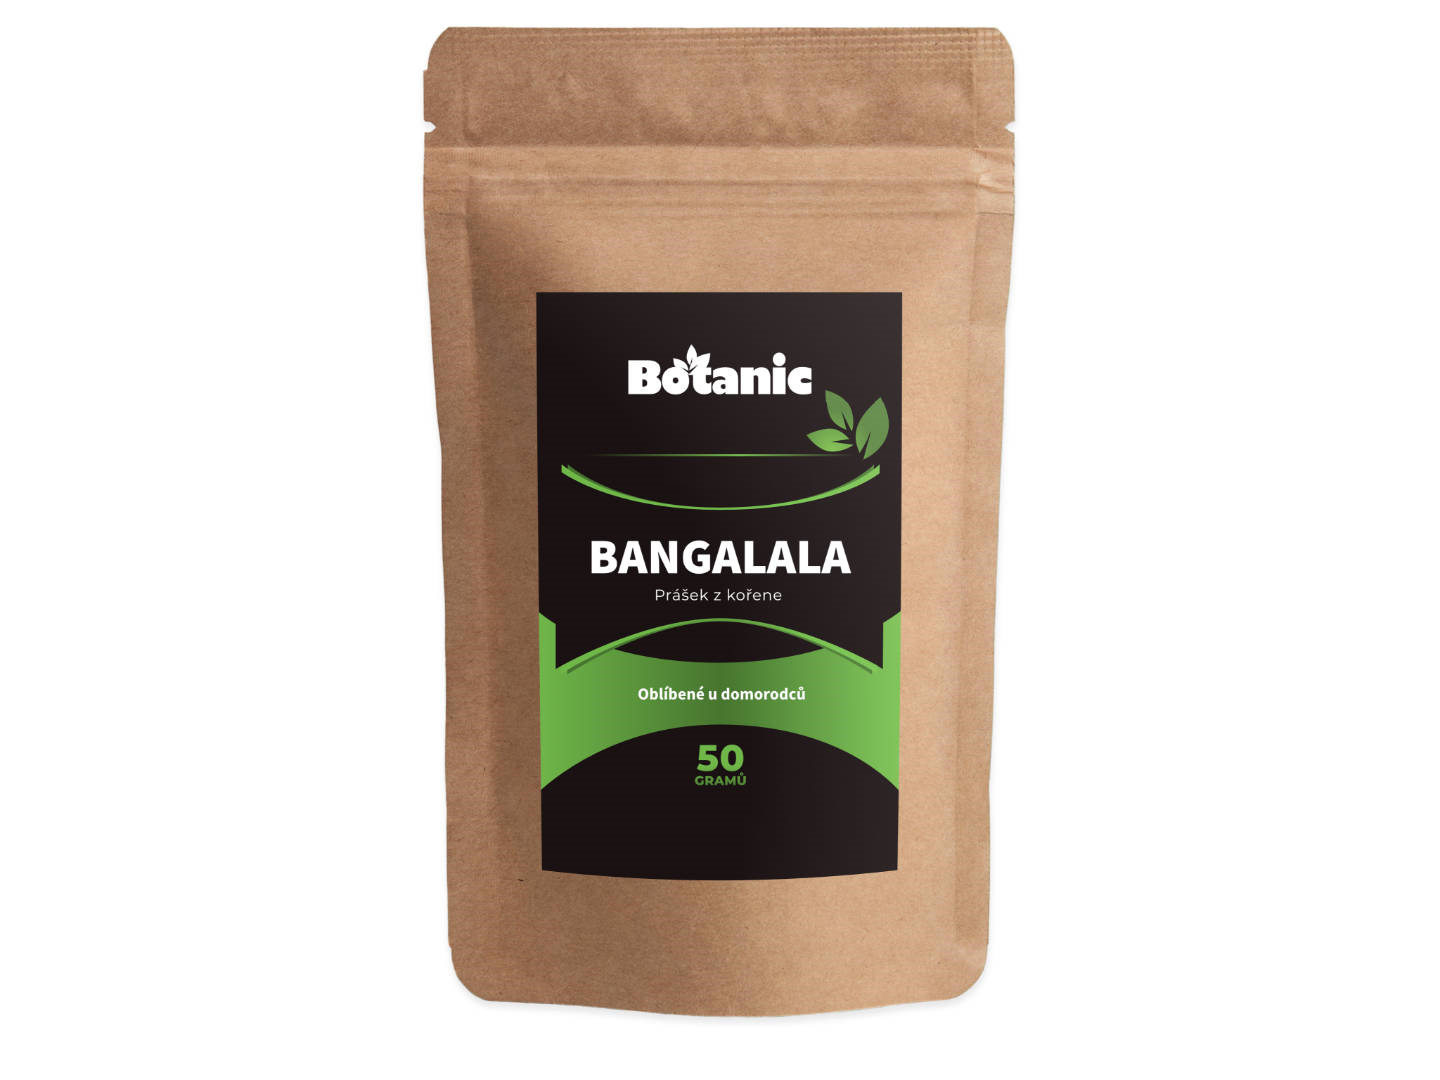 Botanic Bangalala - Prášek z kořene 50g